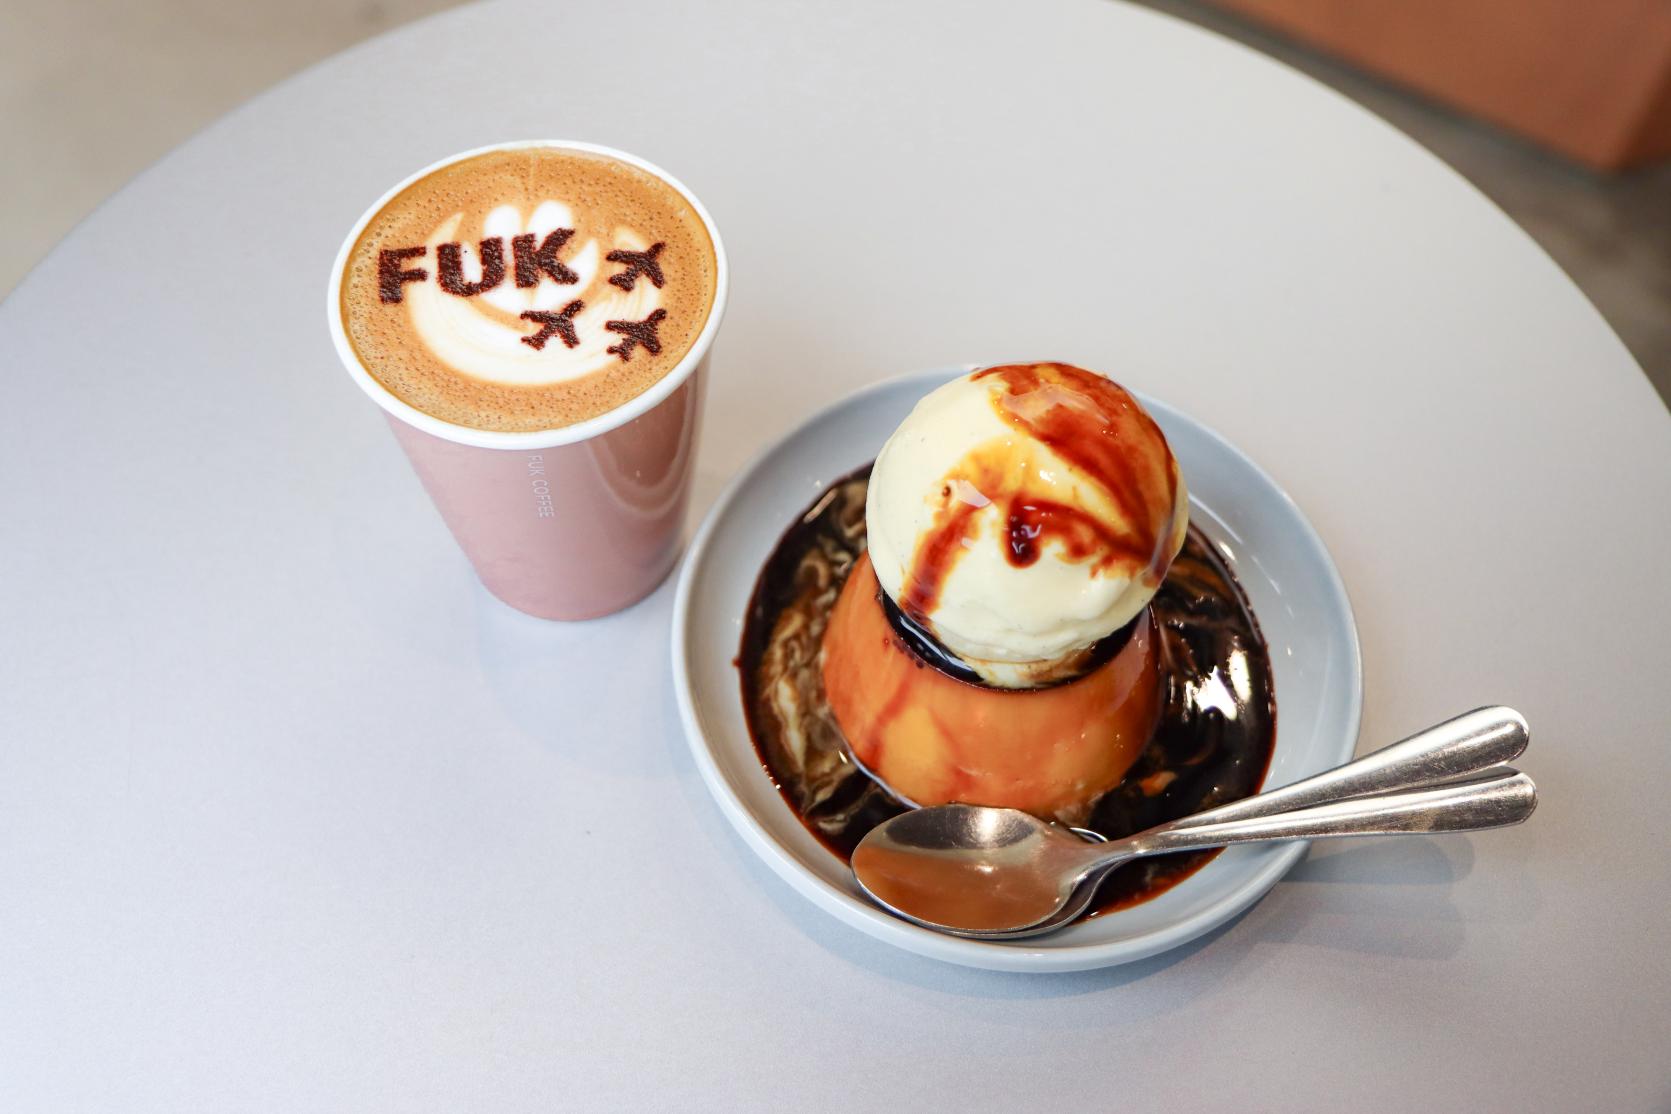 여행을 즐기는 사람이라면 꼭 가봐야 할 커피숍:FUK COFFEE-0